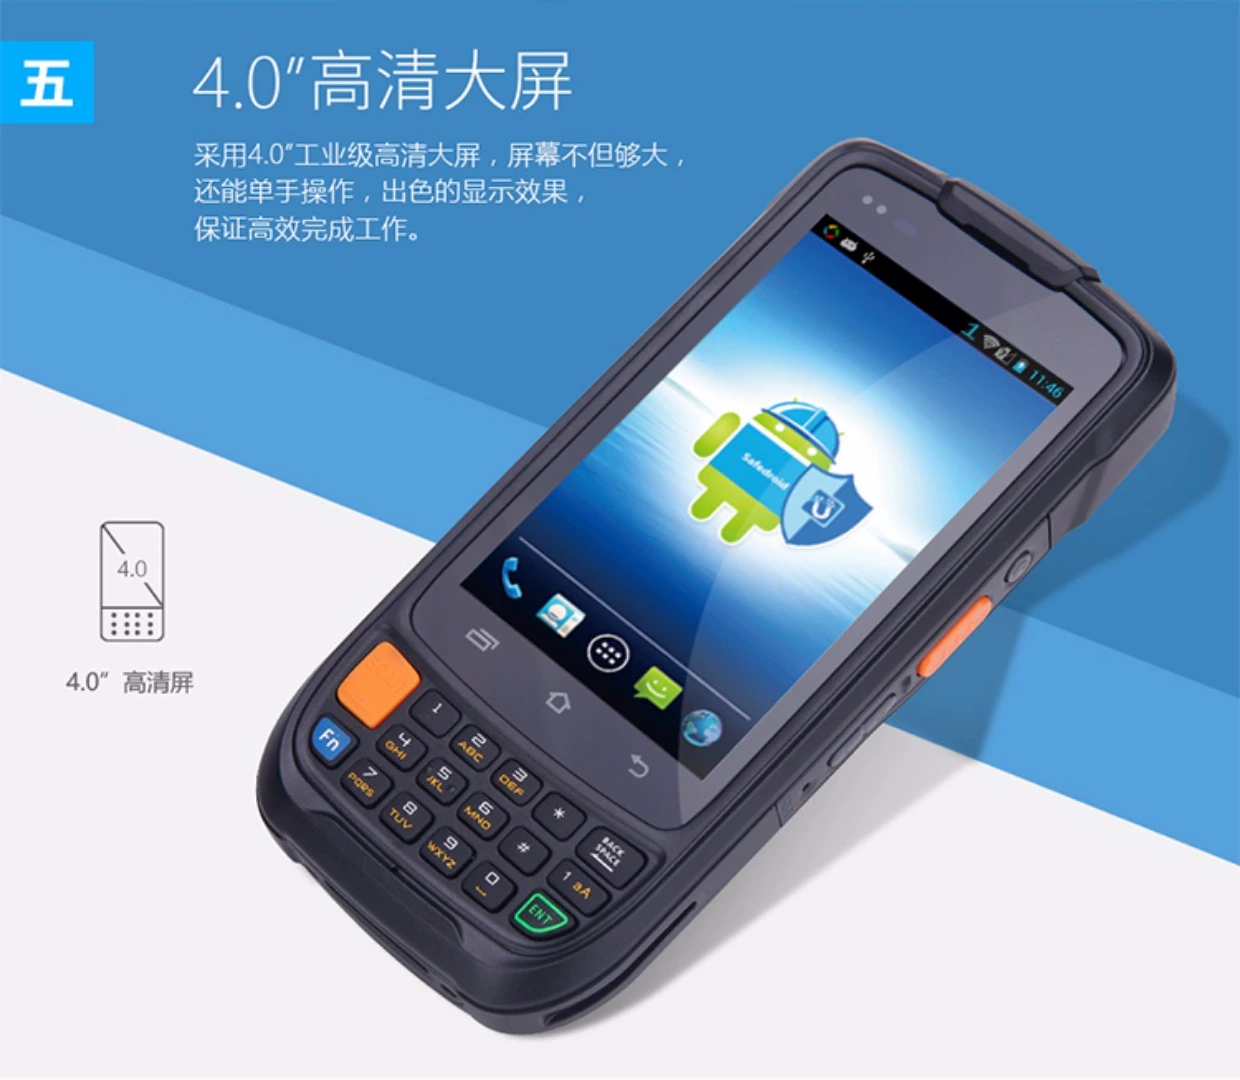 Youbo News i6200A Thiết bị đầu cuối di động cầm tay Android Máy thu thập dữ liệu mã vạch - Thiết bị mua / quét mã vạch